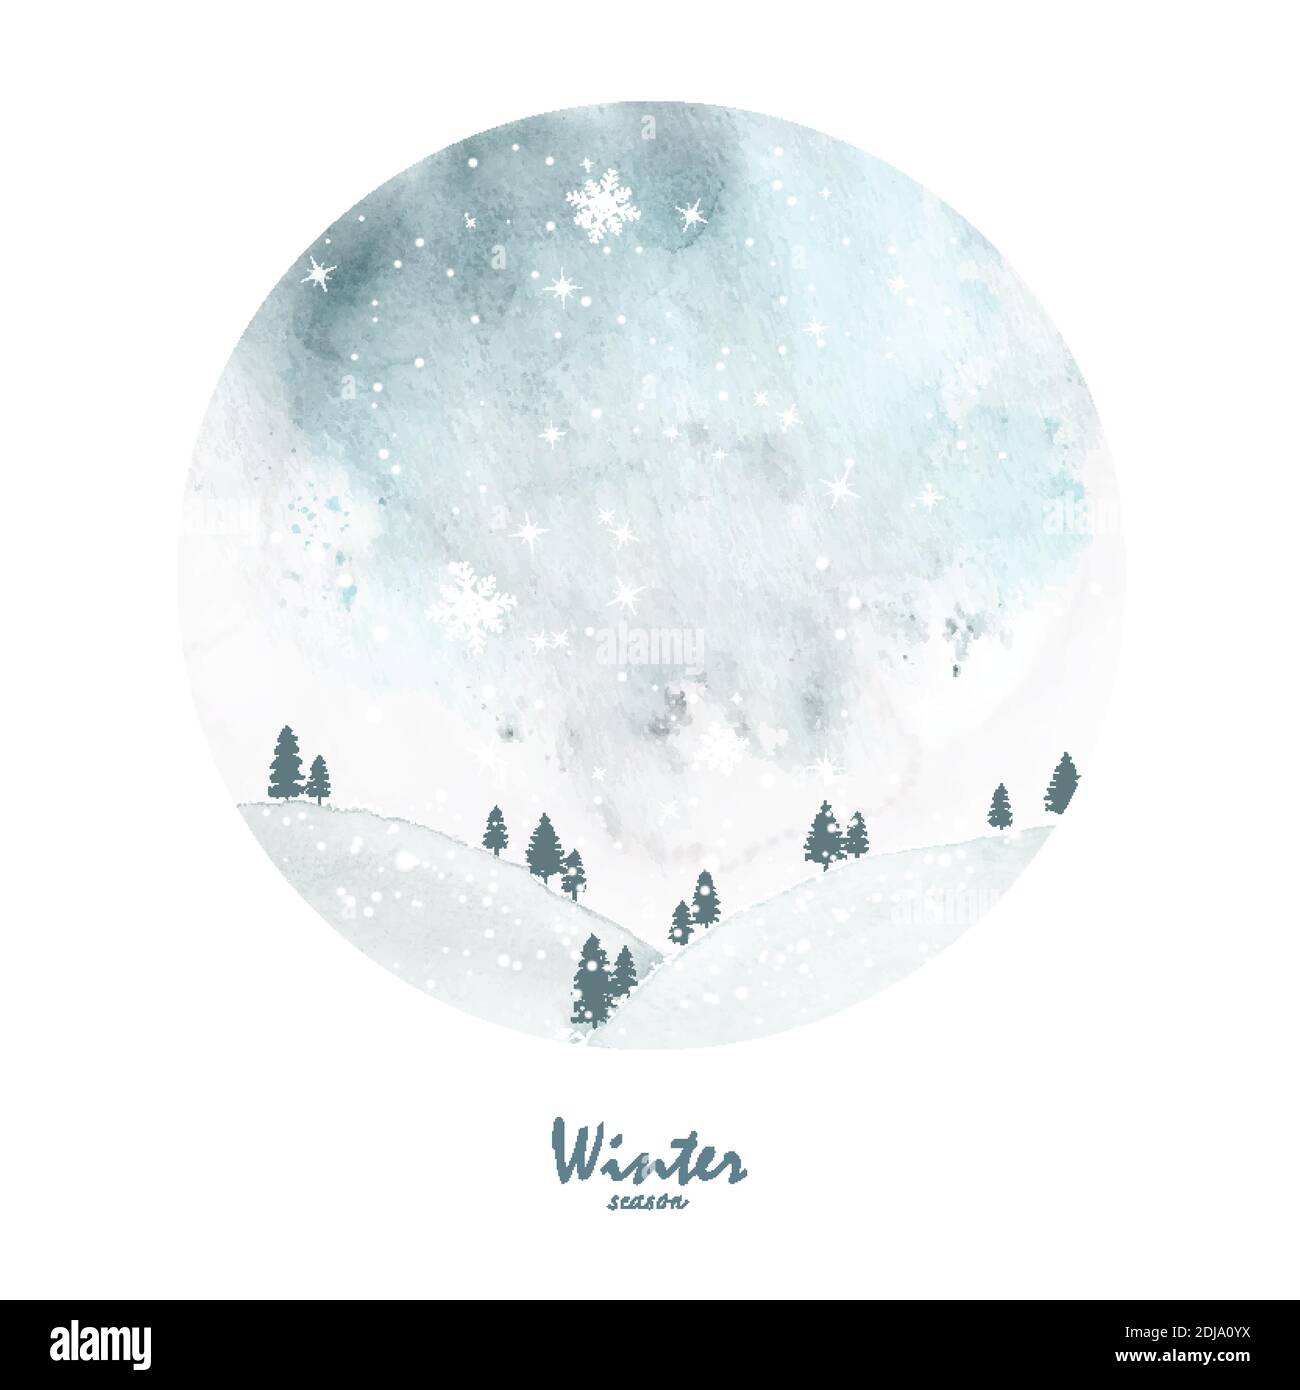 Winter Weihnachtskarte handbemaltes Aquarell. Kiefernwald auf dem Hügel mit Schneeflocken und Schneefällen auf Fleck Aquarell Hintergrund. Stock Vektor